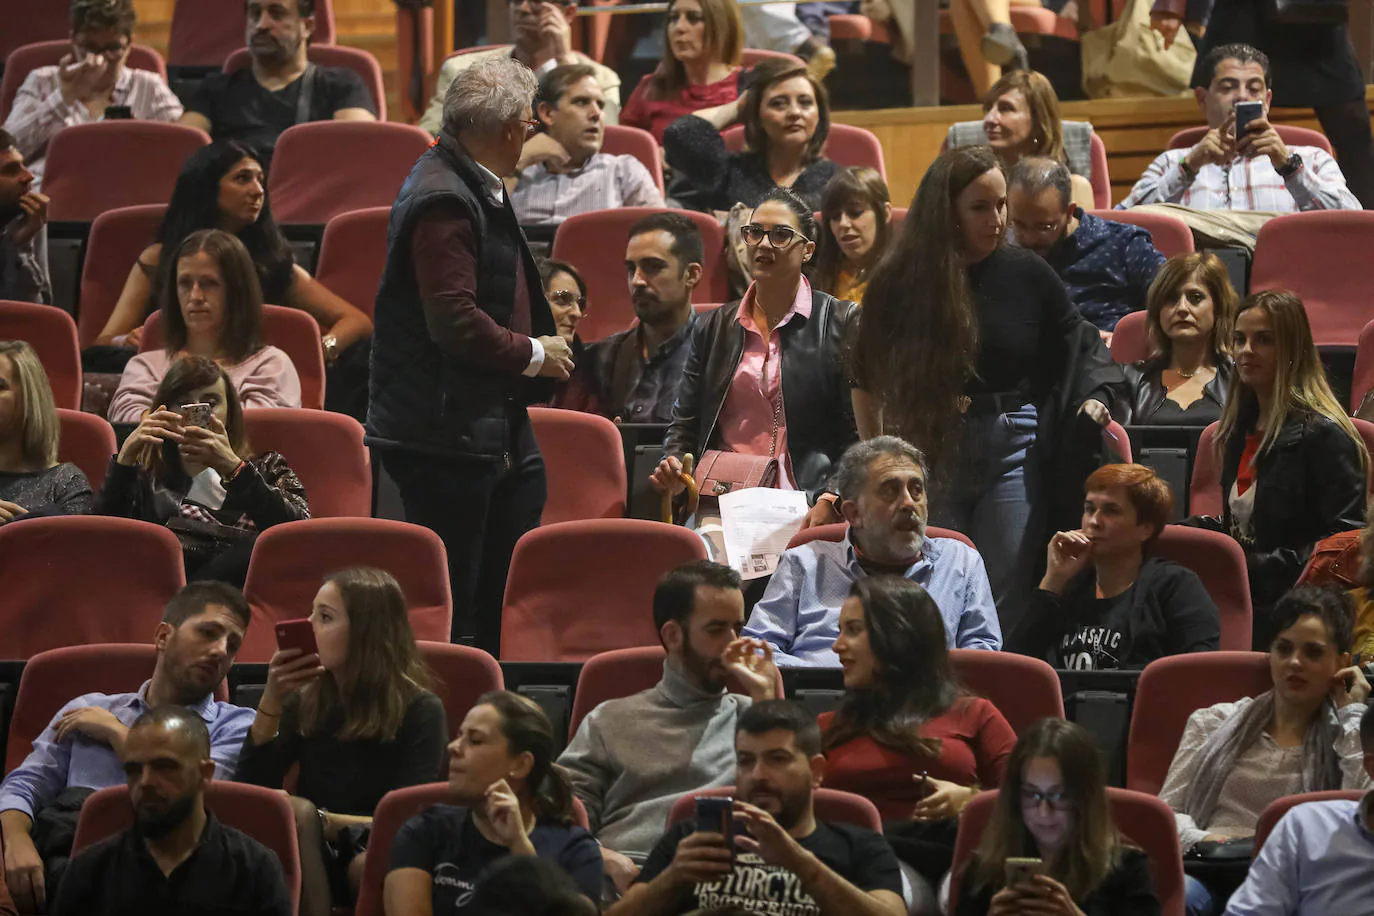 El artista barcelonés cautivó anoche al público granadino en el Palacio de Congresos, donde repasó cuatro décadas de música